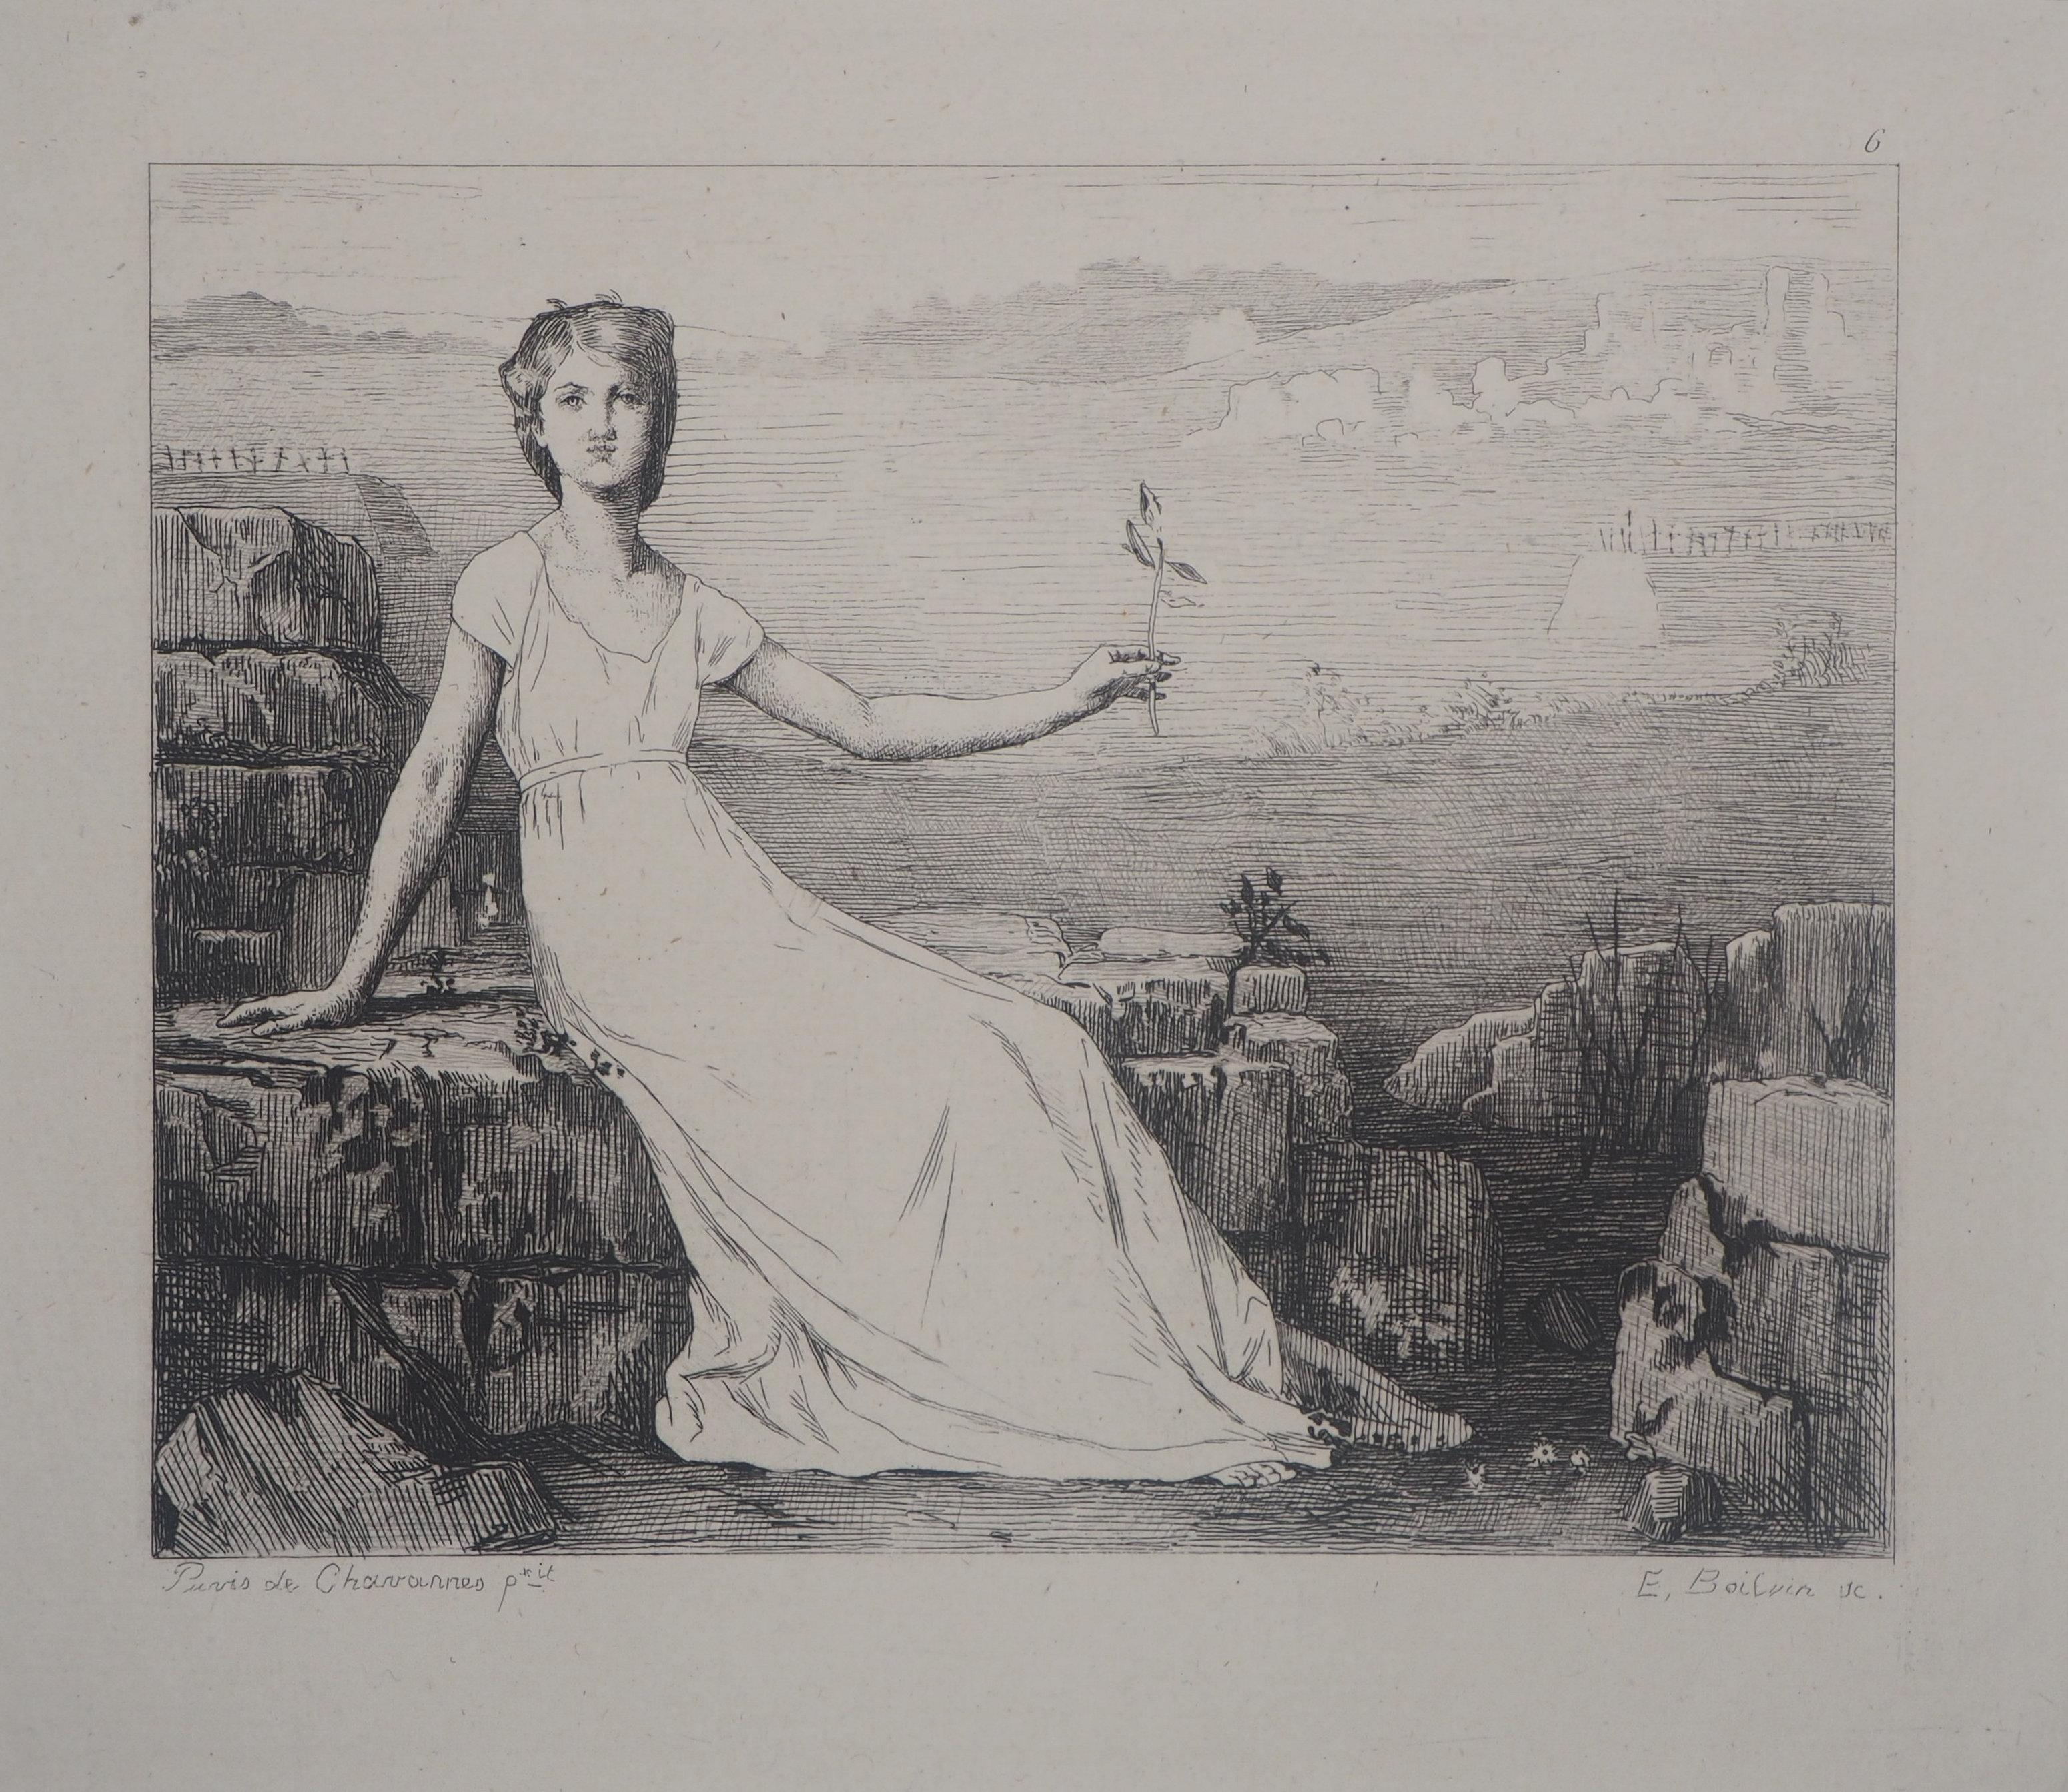 Pierre Puvis de Chavannes Landscape Print – Hope – Original-Radierung – Ed. Durand Ruel, 1873